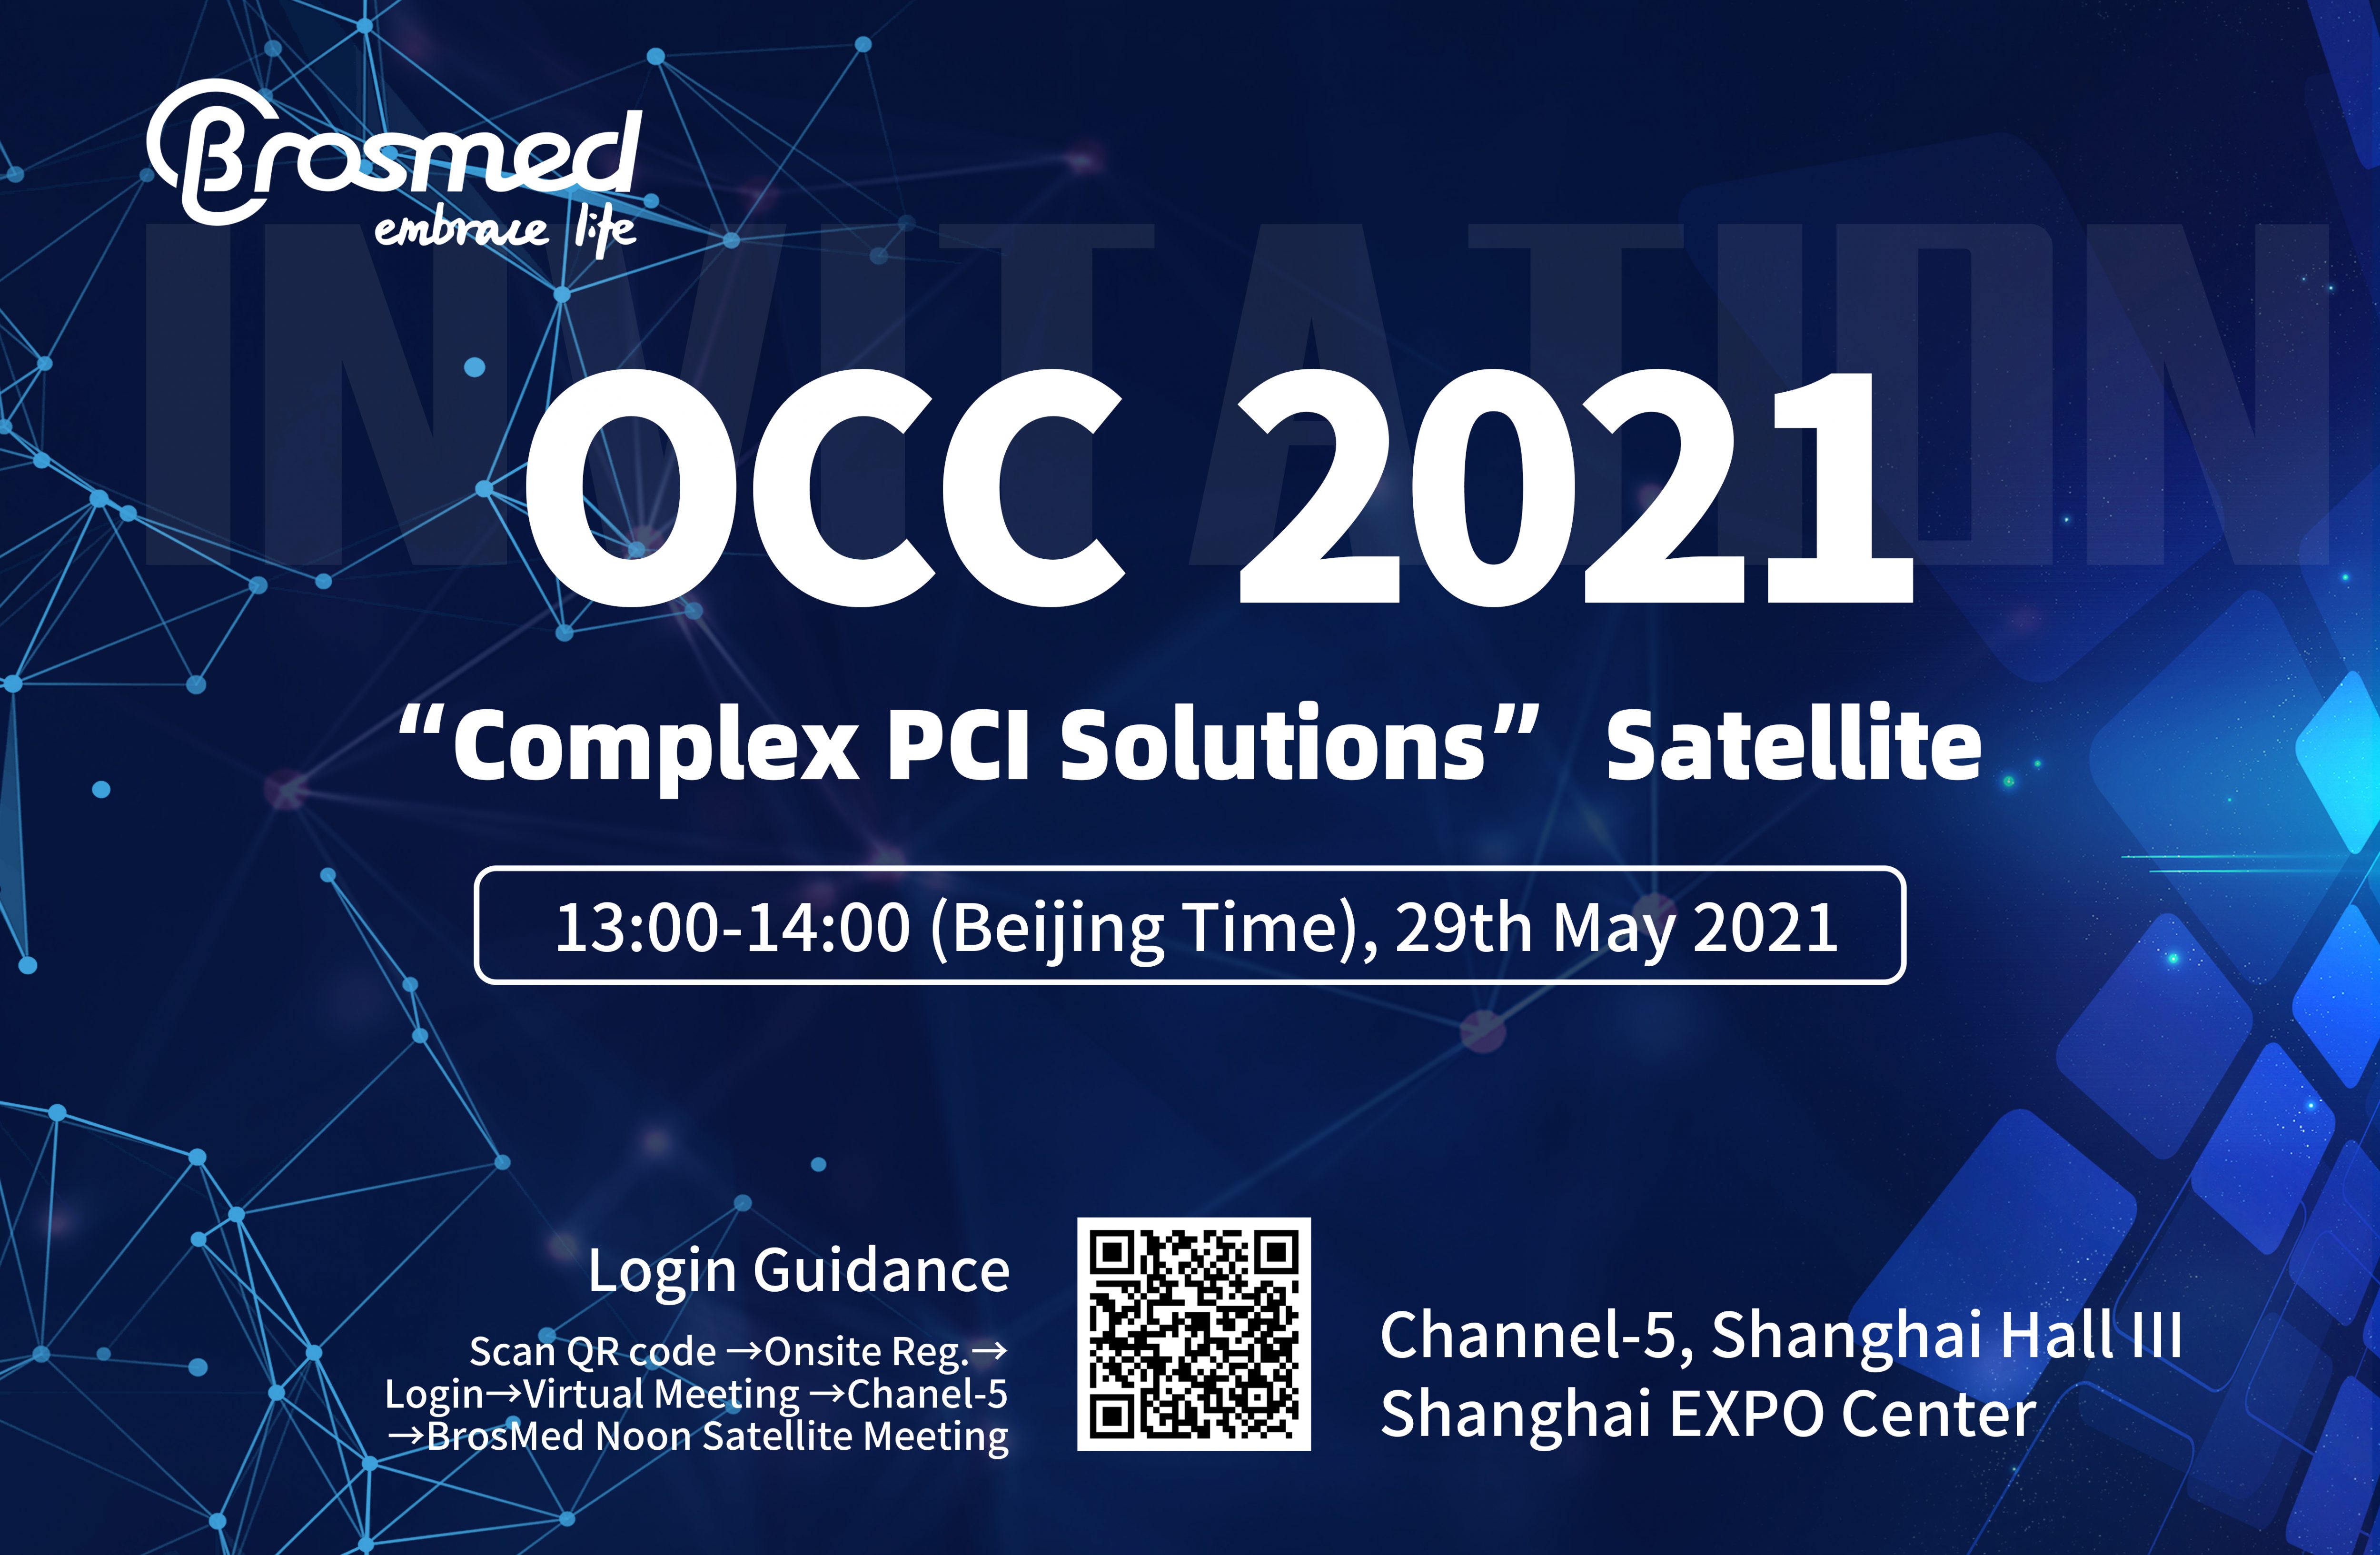 OCC 2021 Satellite Announcement: “Complex PCI Solutions”